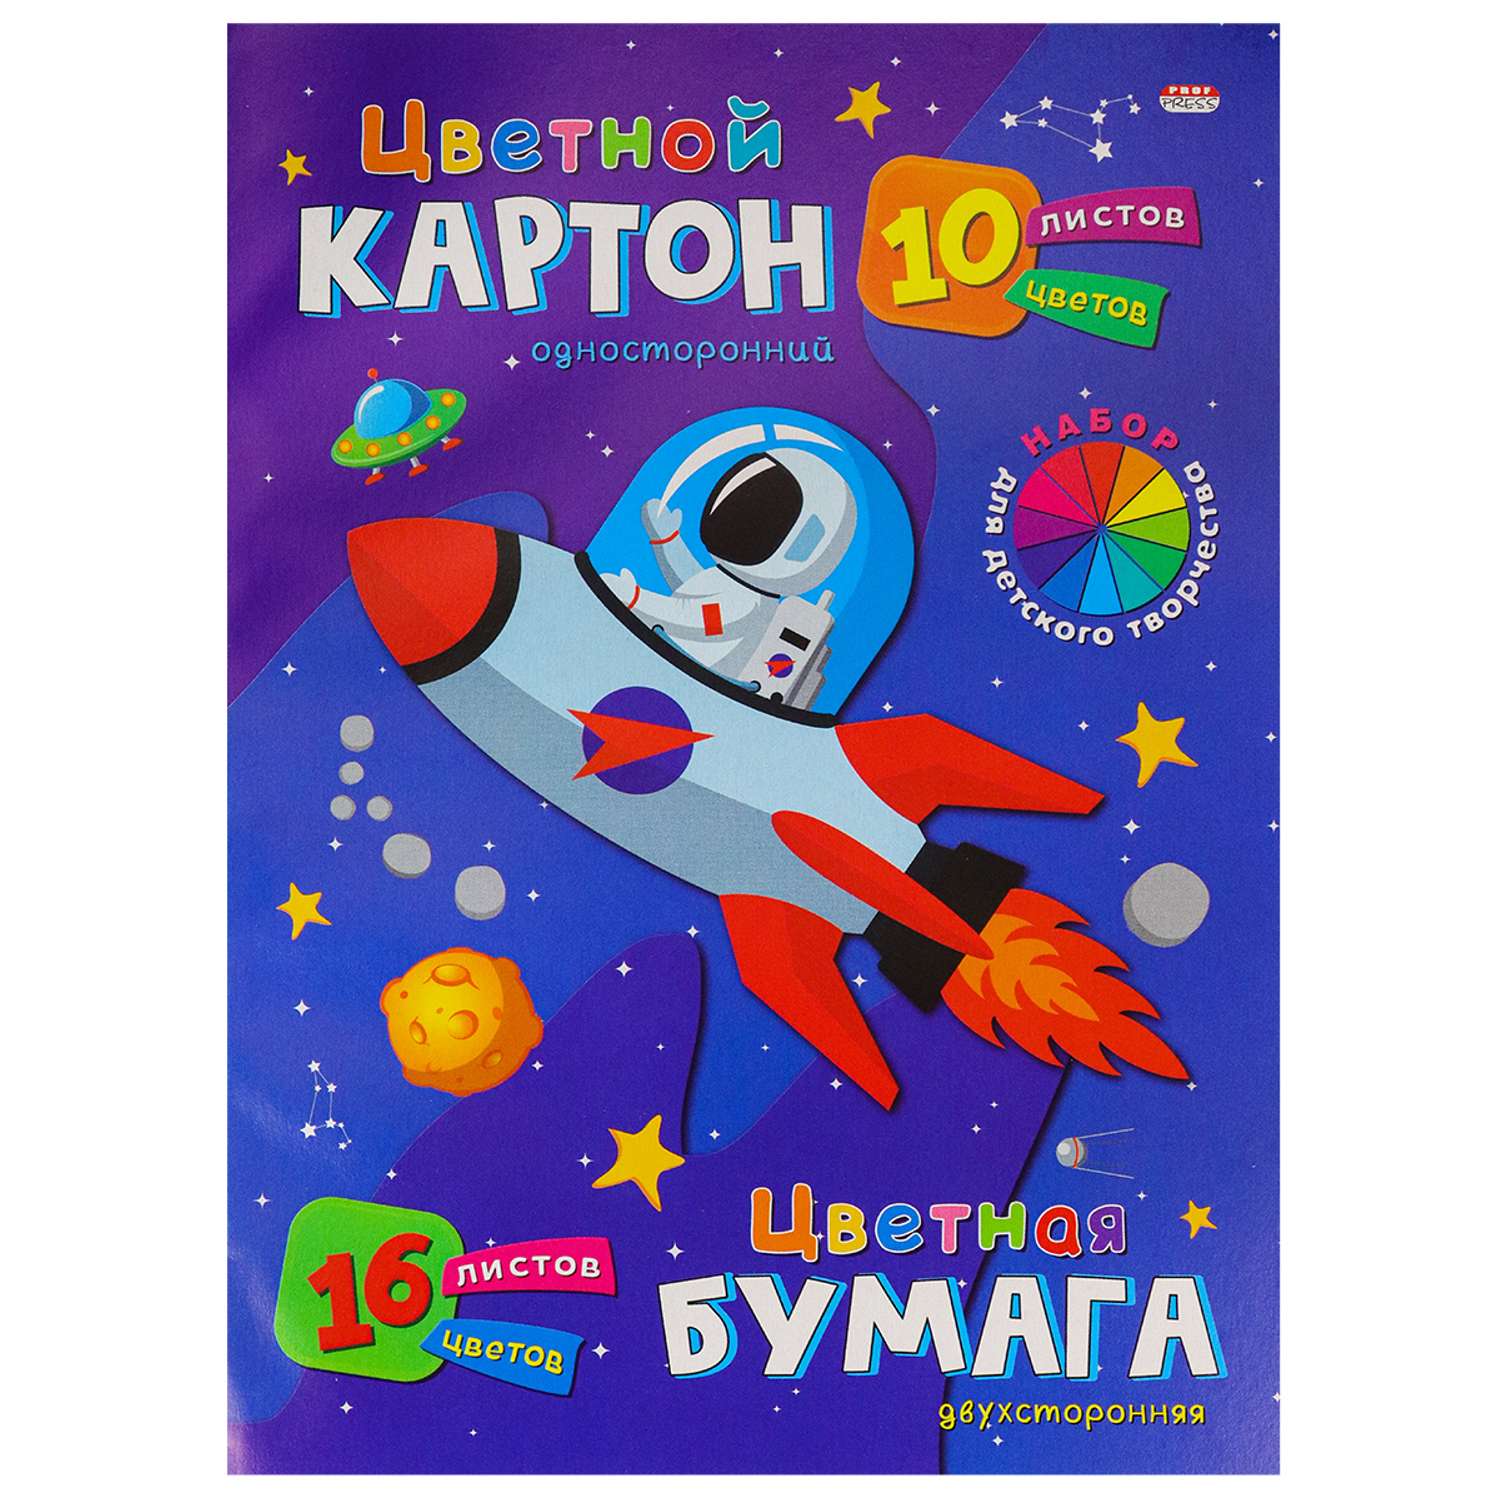 Набор для детского творчества Prof-Press Полет в космос А4 цветной картон 10 листов бумага 16 листов - фото 1